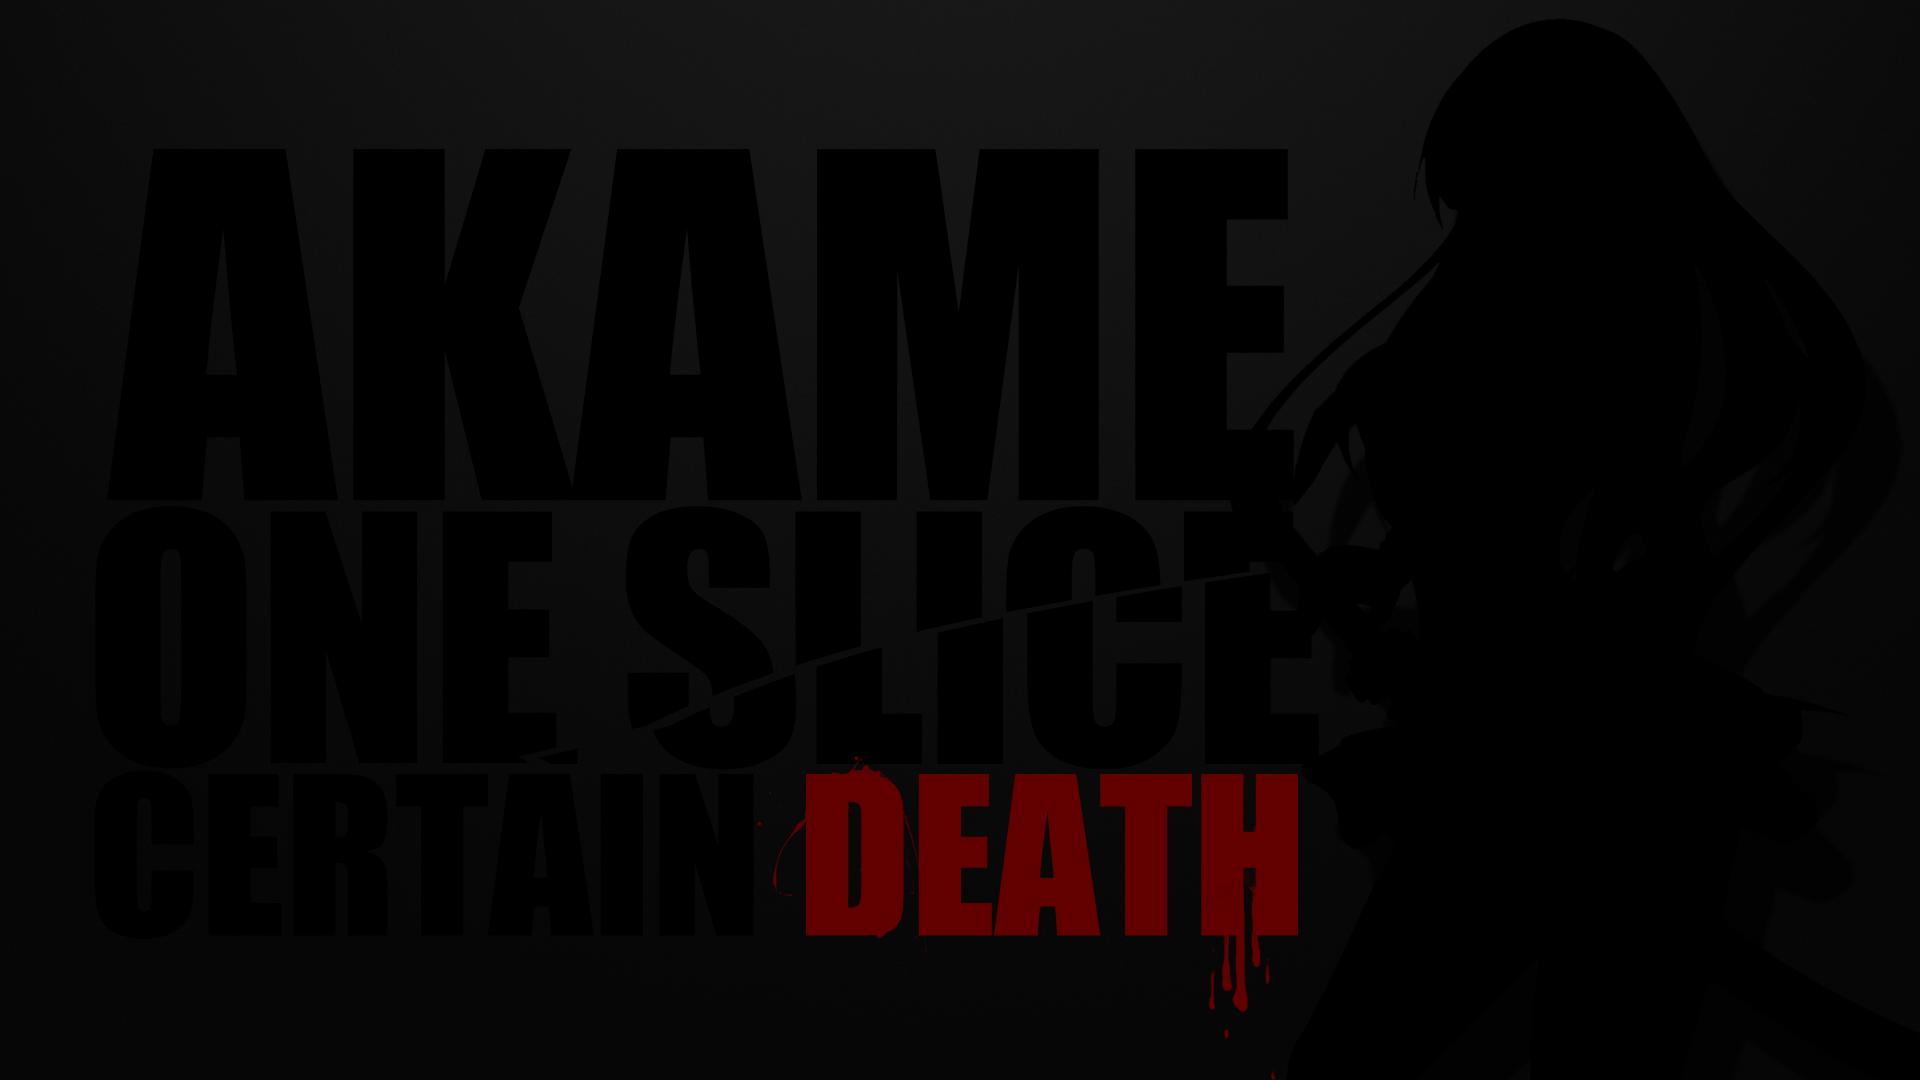 Akame Ga Kill! wallpapers HD quality